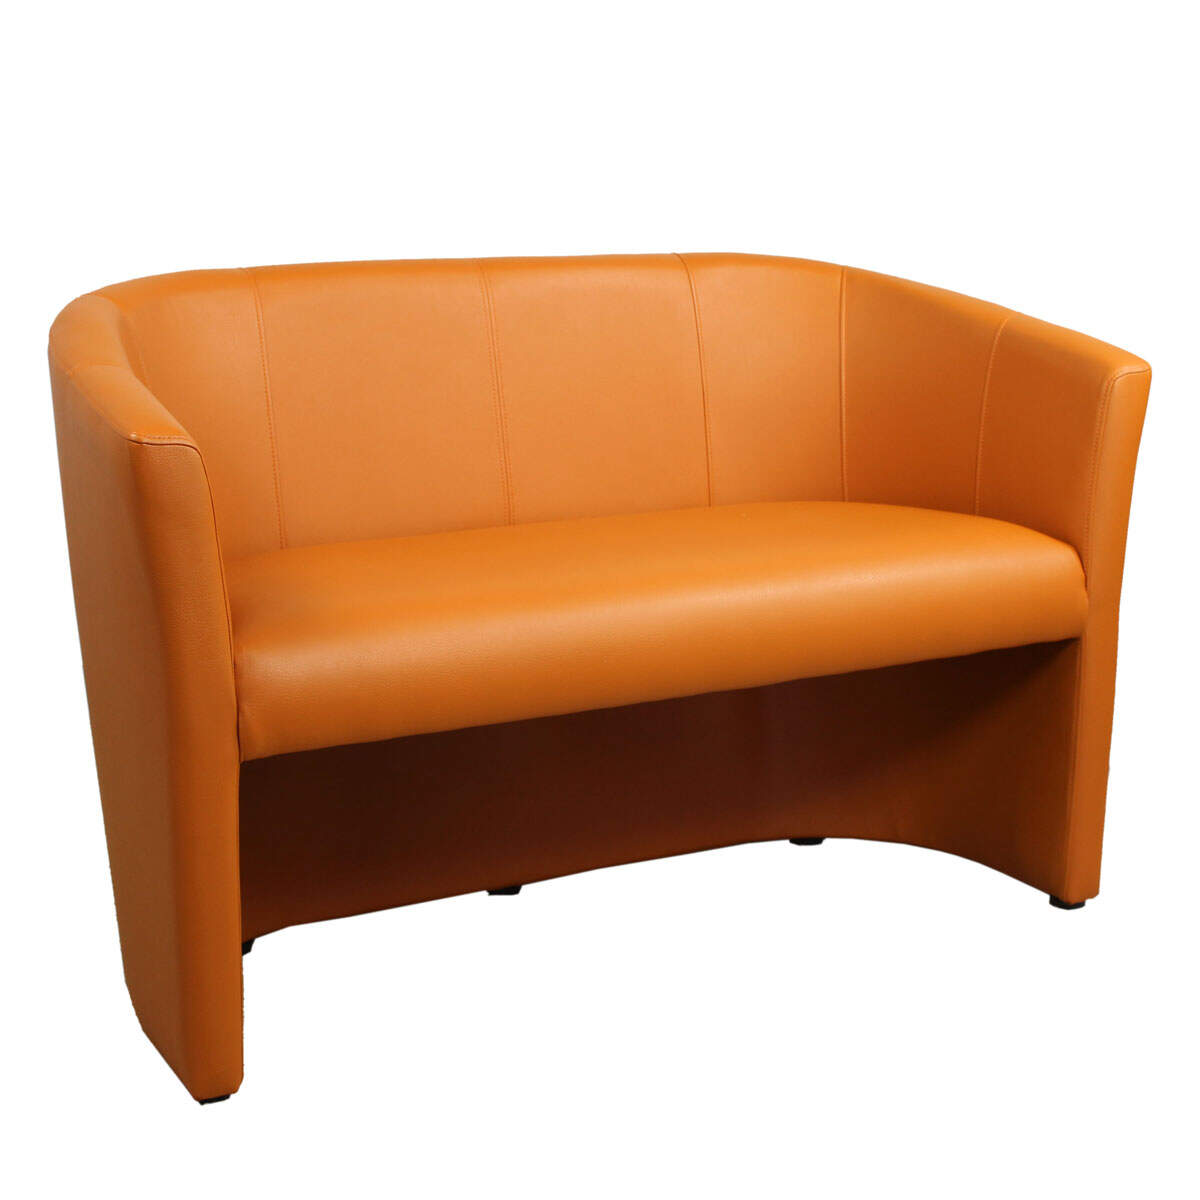 Gepolsterte Sitzbank mit Rückenlehne | Lounge Sofa, 185,71 €